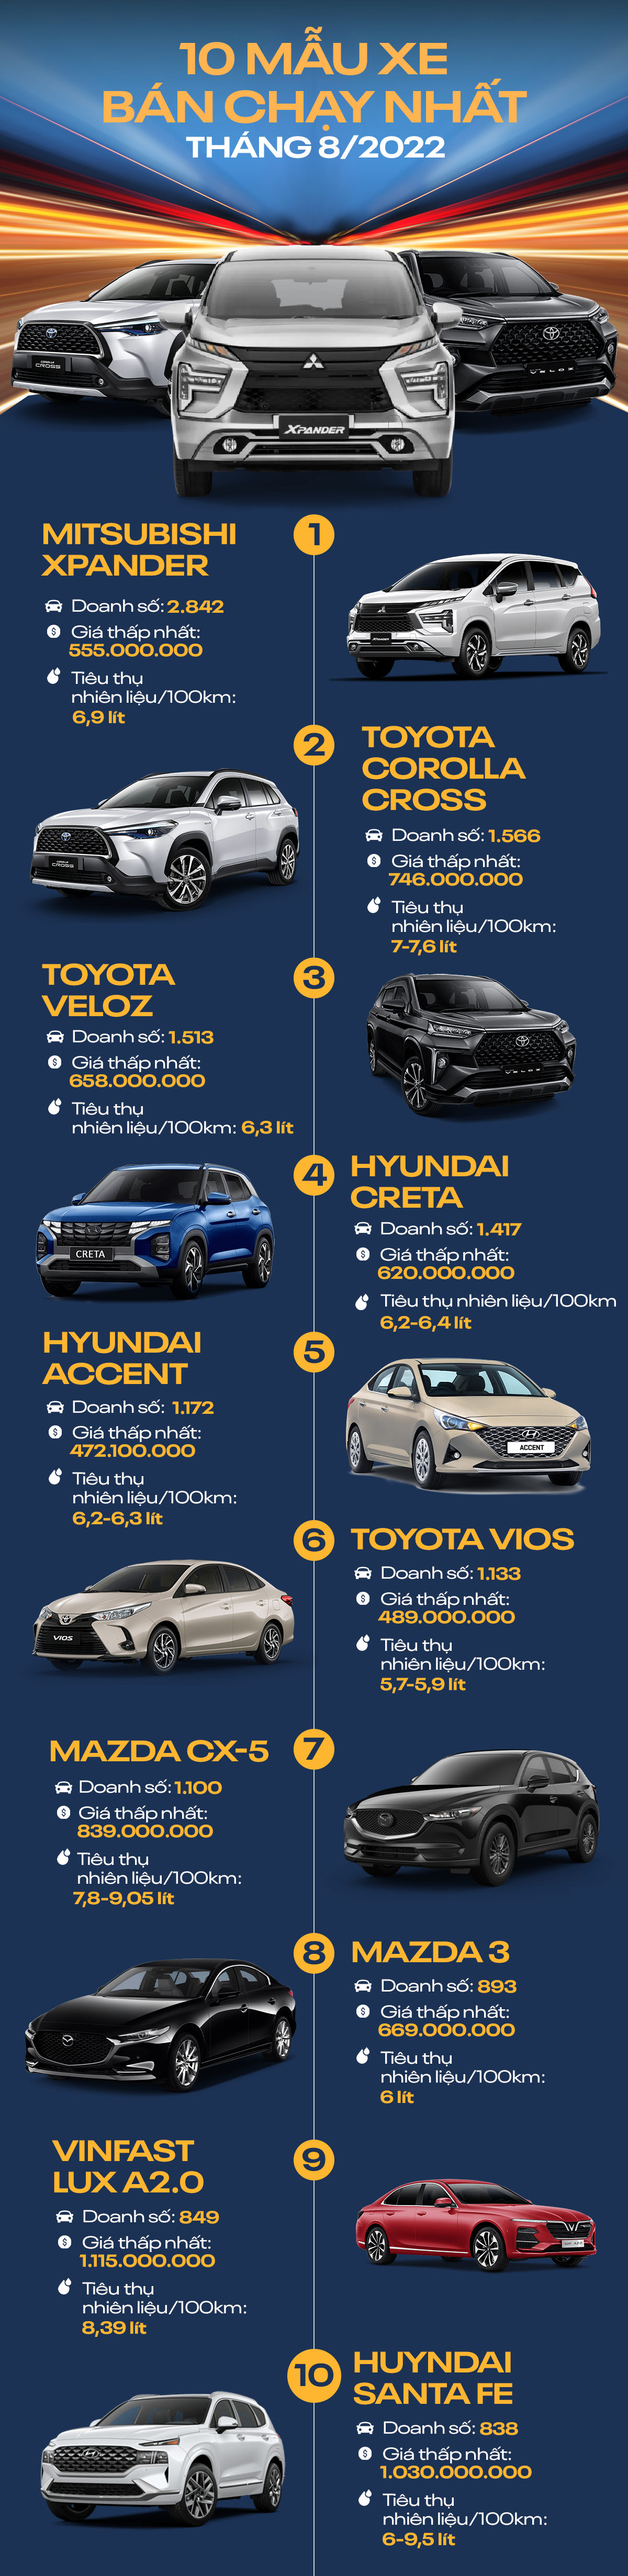 [Infographic] 10 mẫu ô tô bán chạy nhất tháng 8/2022: Mitsubishi Xpander thống trị tháng thứ 2 liên tiếp - Ảnh 1.